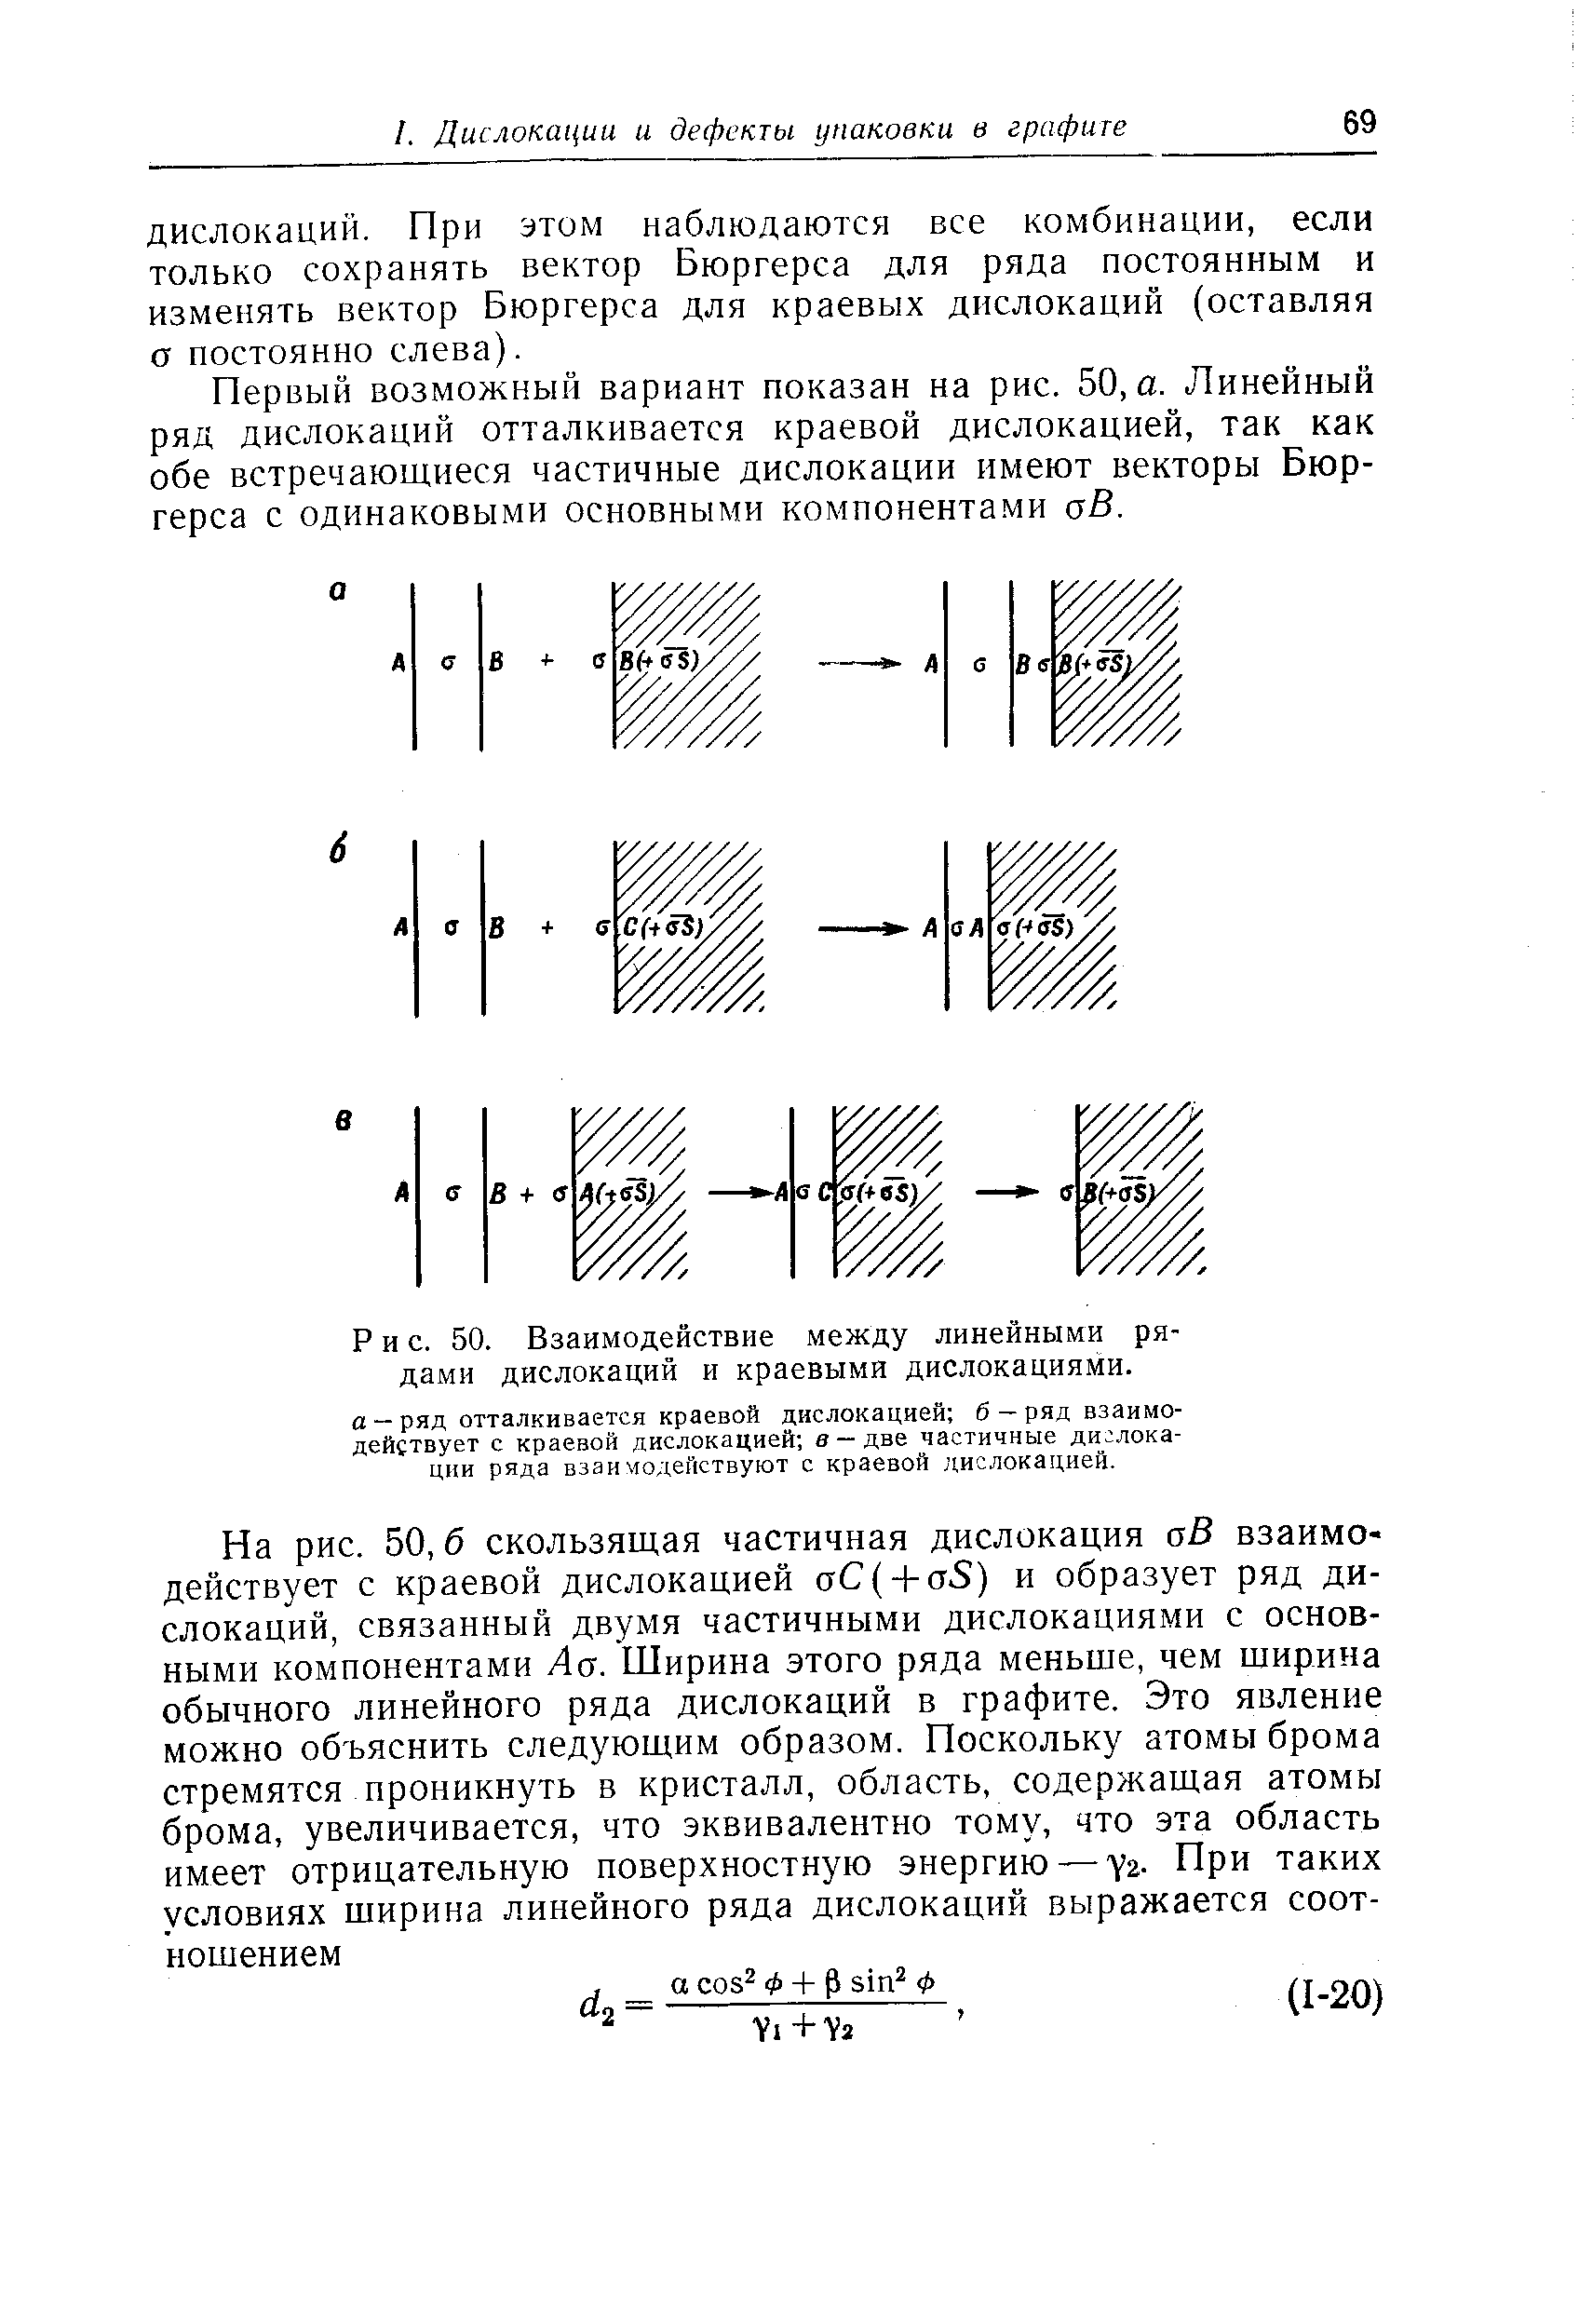 Первый возможный вариант показан на рис. 50, а. Линейный ряд дислокаций отталкивается краевой дислокацией, так как обе встречающиеся частичные дислокации имеют векторы Бюргерса с одинаковыми основными компонентами аВ.